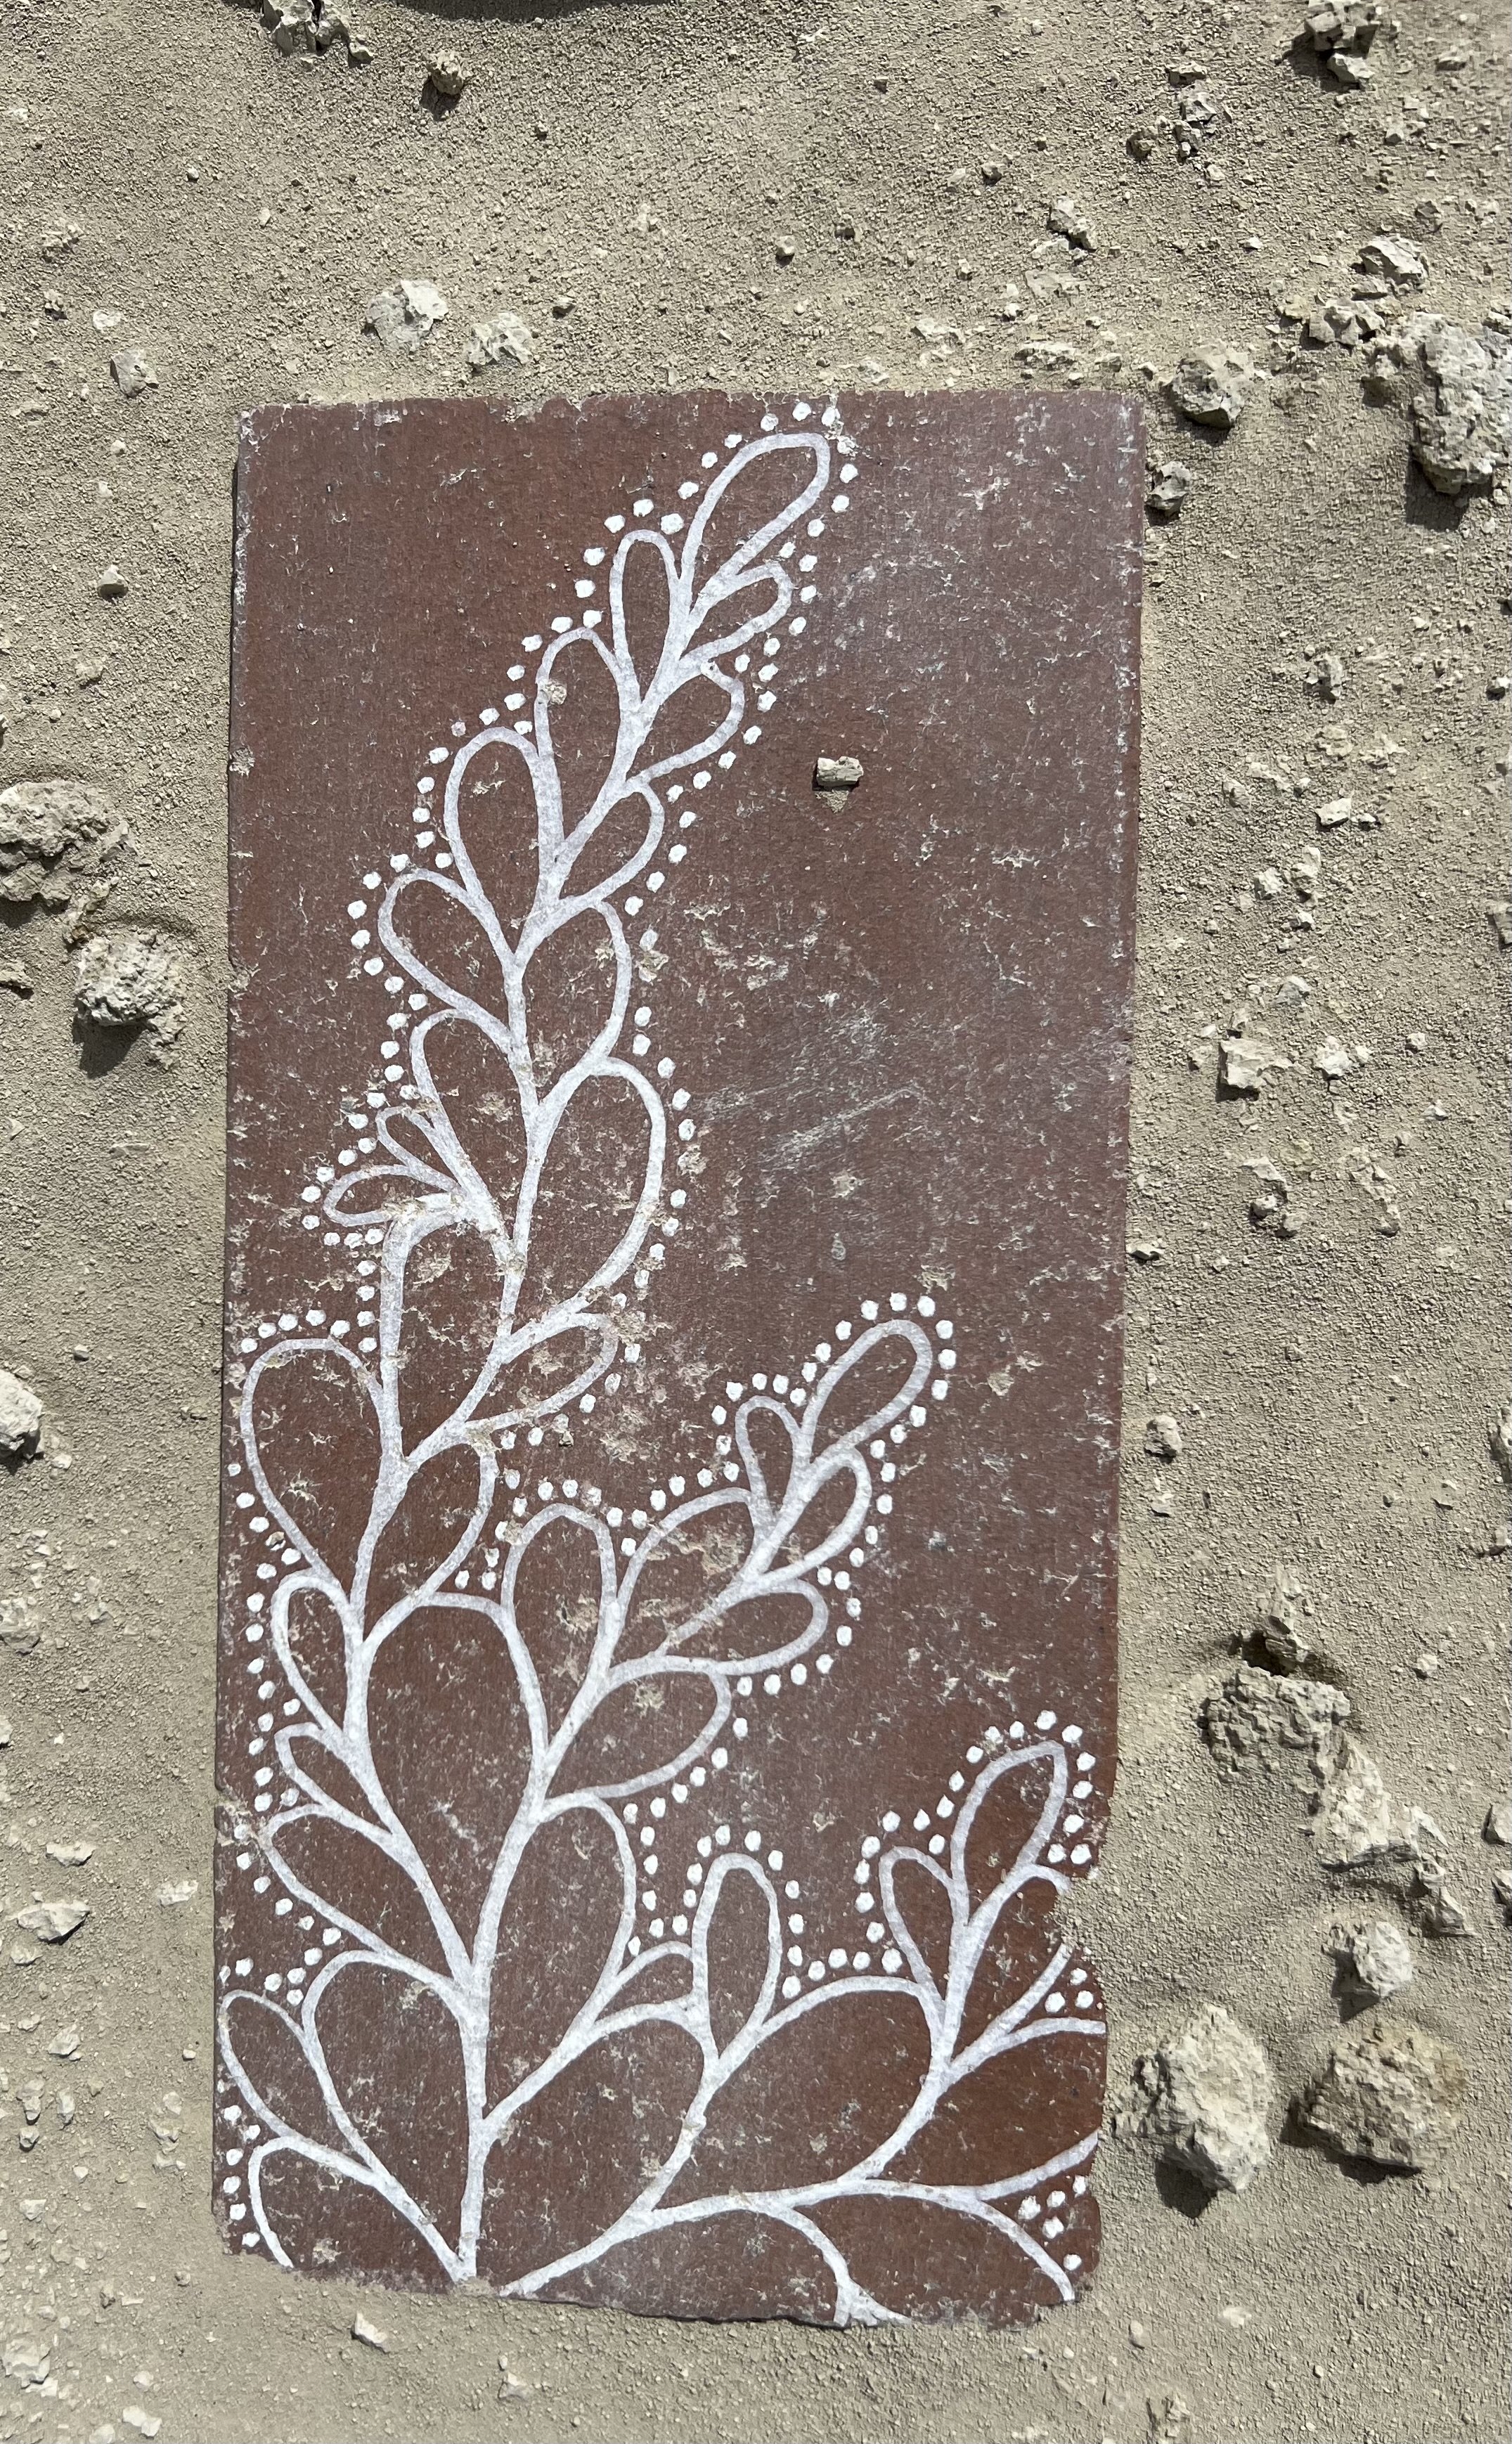 Tile set in playa dust.